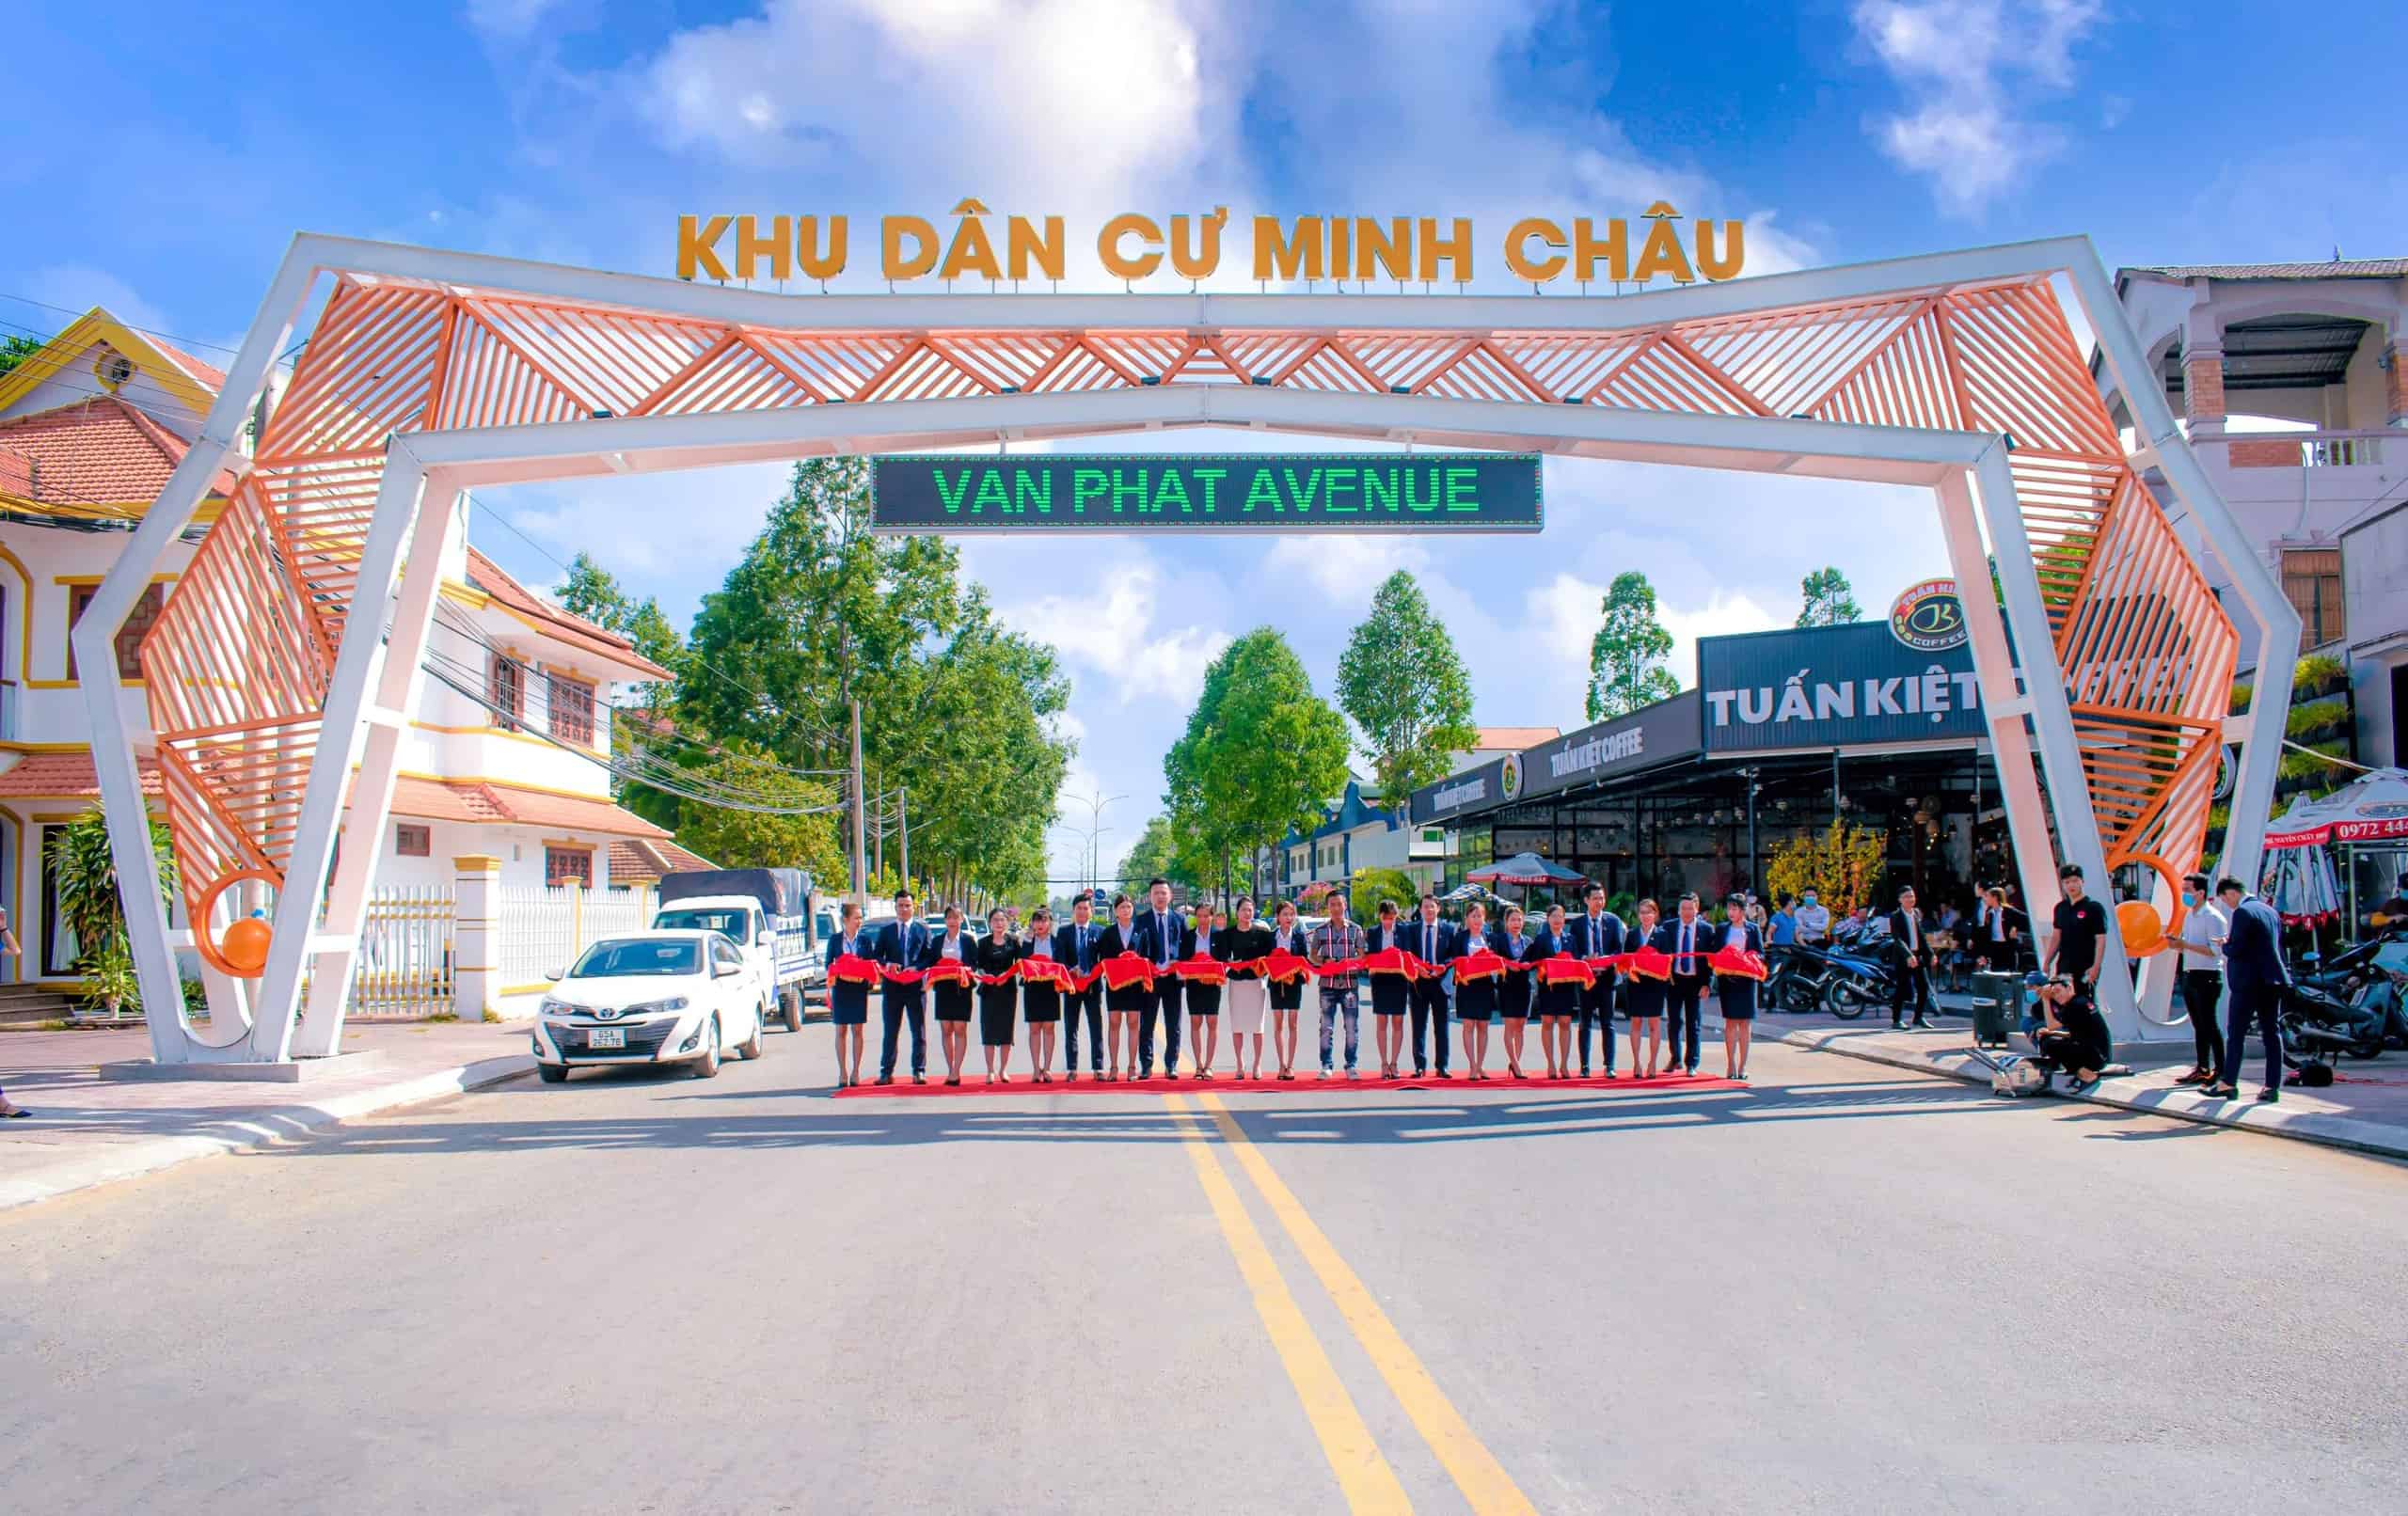 Đại diện các đơn vị cắt băng khánh thành cổng chào dự án KDC Minh Châu (Vạn Phát Avenue)